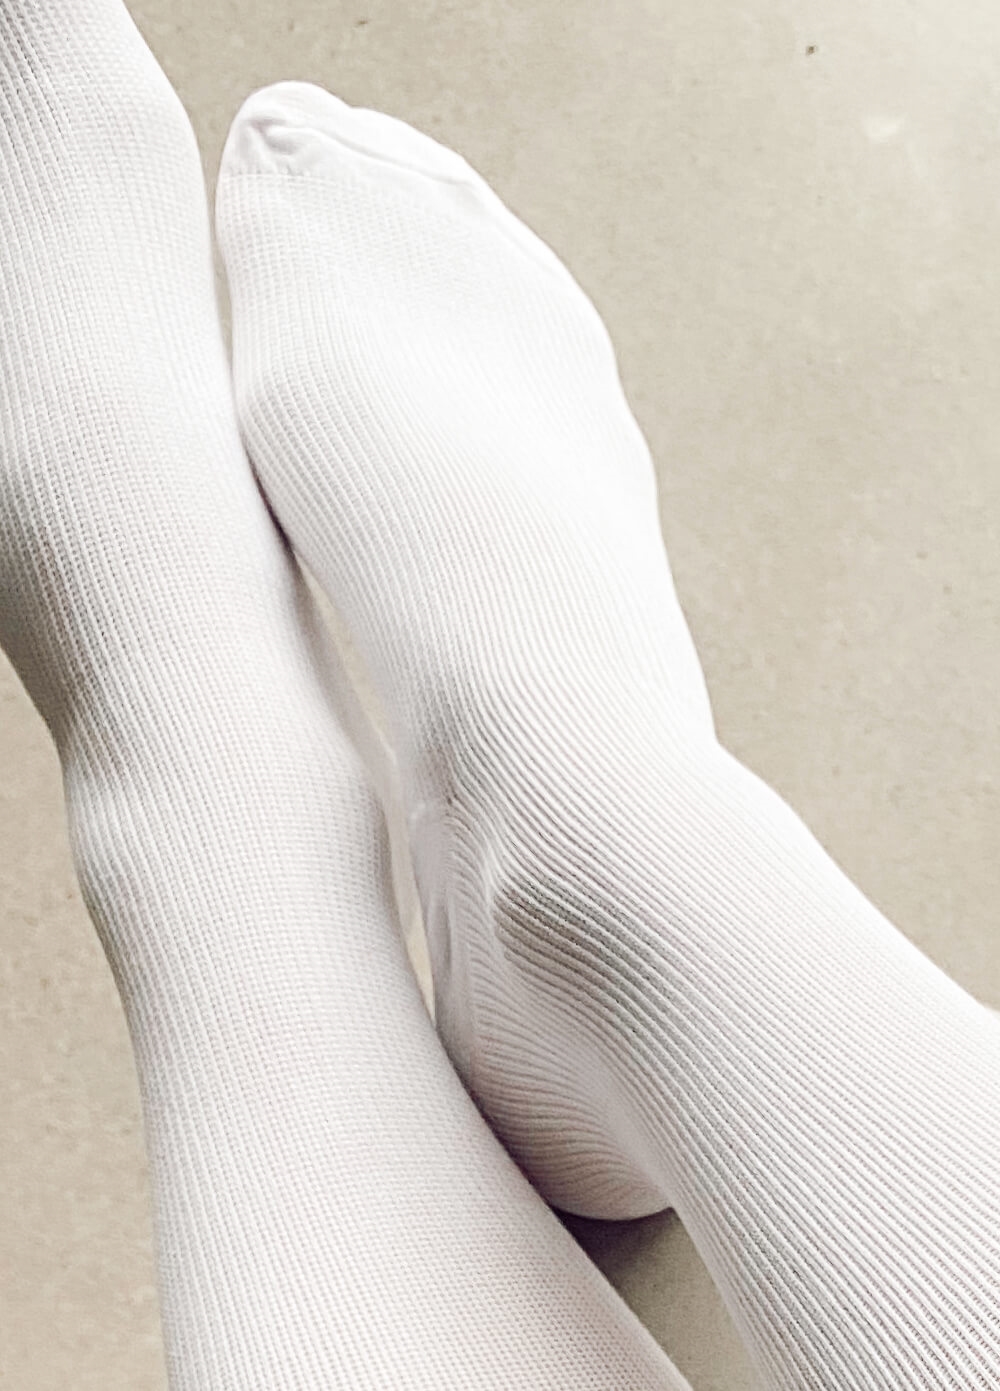 Mama Sox - Renew Maternity Compression Socks in White